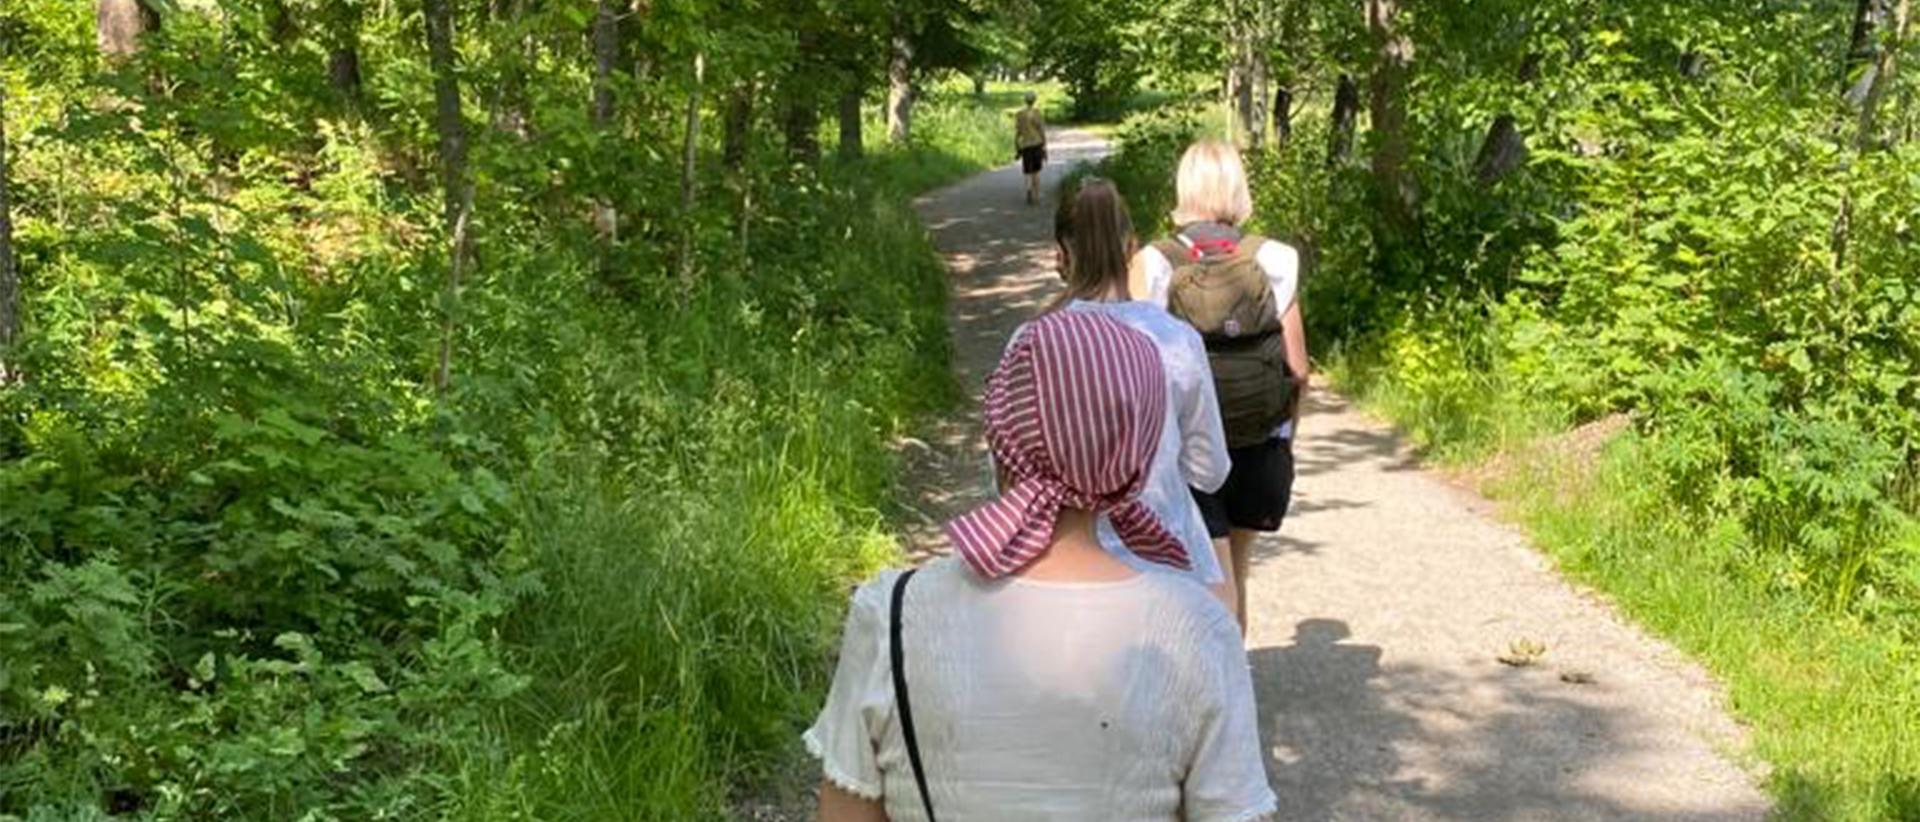 Ihmisiä kesäisessä maisemassa kävelemässä jonossa selin. Kuva Ulla Lumijärvi